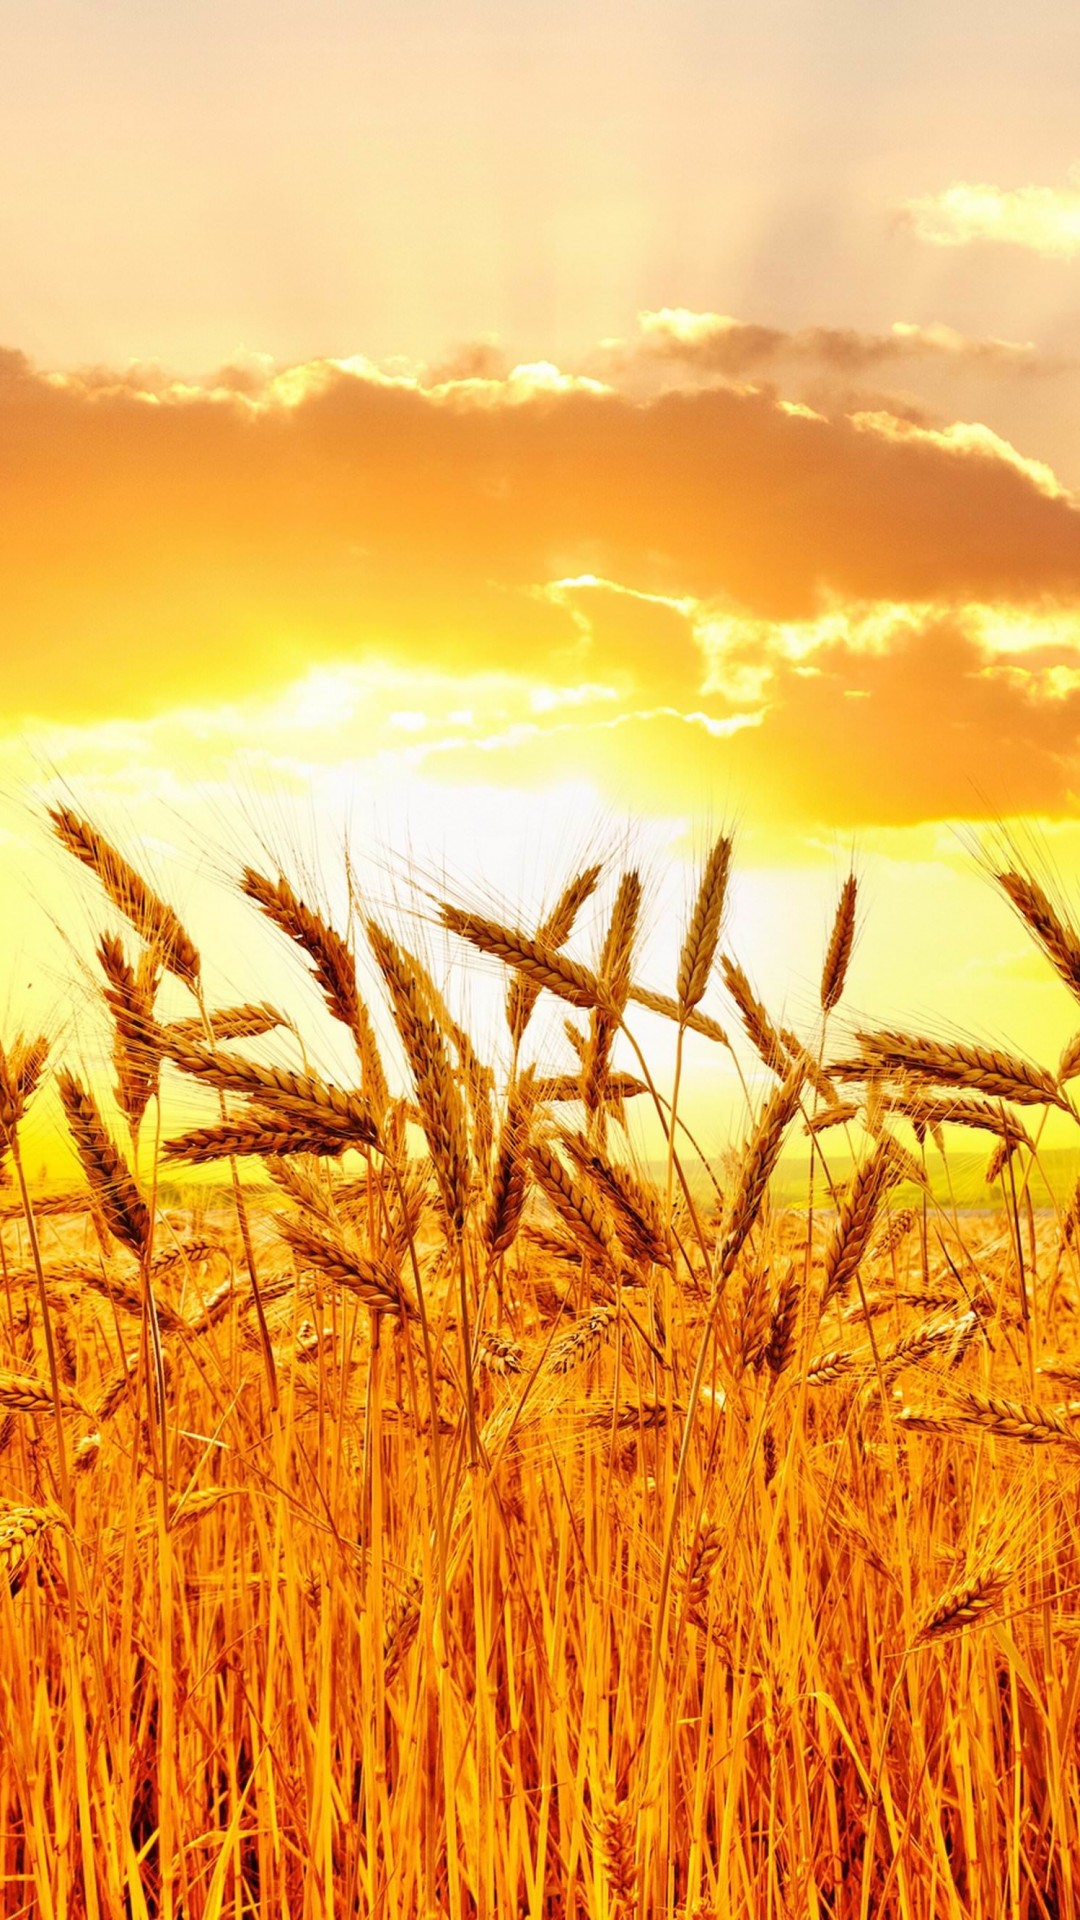 Golden Wheat Field At Sunset Wallpaper for Google Nexus 5